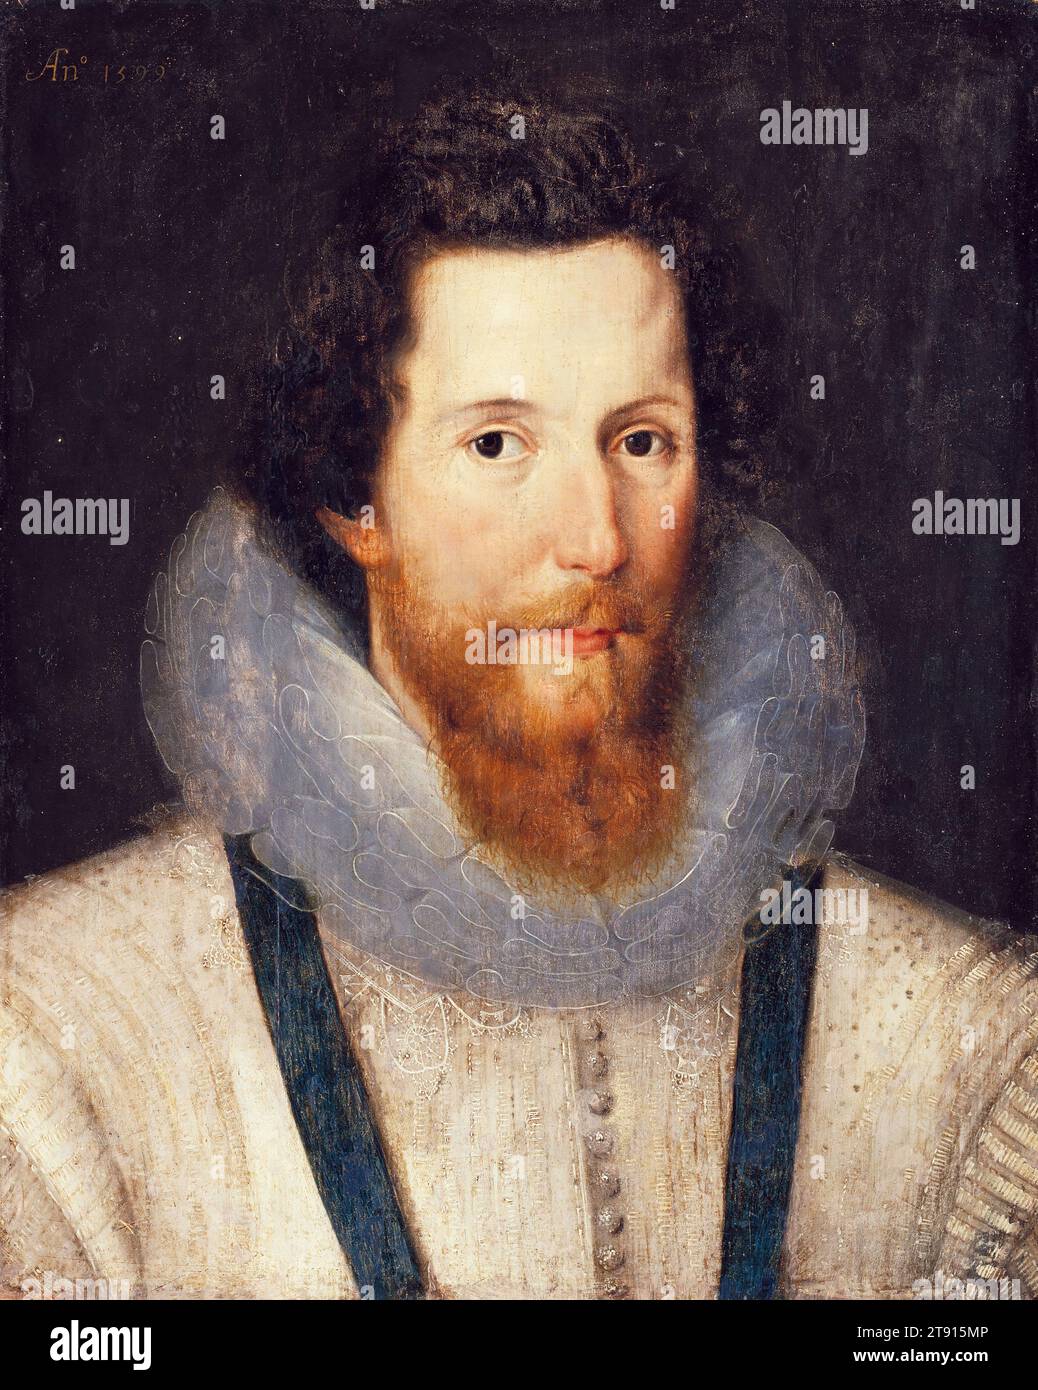 Ritratto di Robert Devereux, II conte di Essex, 1599, Studio di Marcus Gheeraerts il giovane, fiammingo, 1561/62 - 1636, 19 1/2 x 15 1/2 pollici (49,53 x 39,37 cm) (pannello), olio su pannello, Inghilterra, XVI secolo, il conte di Essex era un nobile inglese e uno dei preferiti della regina Elisabetta I.. Politicamente ambizioso, e un generale impegnato, fu posto agli arresti domiciliari a seguito di una povera campagna in Irlanda durante la guerra dei nove anni nel 1599. Nel 1601 guidò un fallito colpo di stato contro il governo e fu giustiziato per tradimento Foto Stock